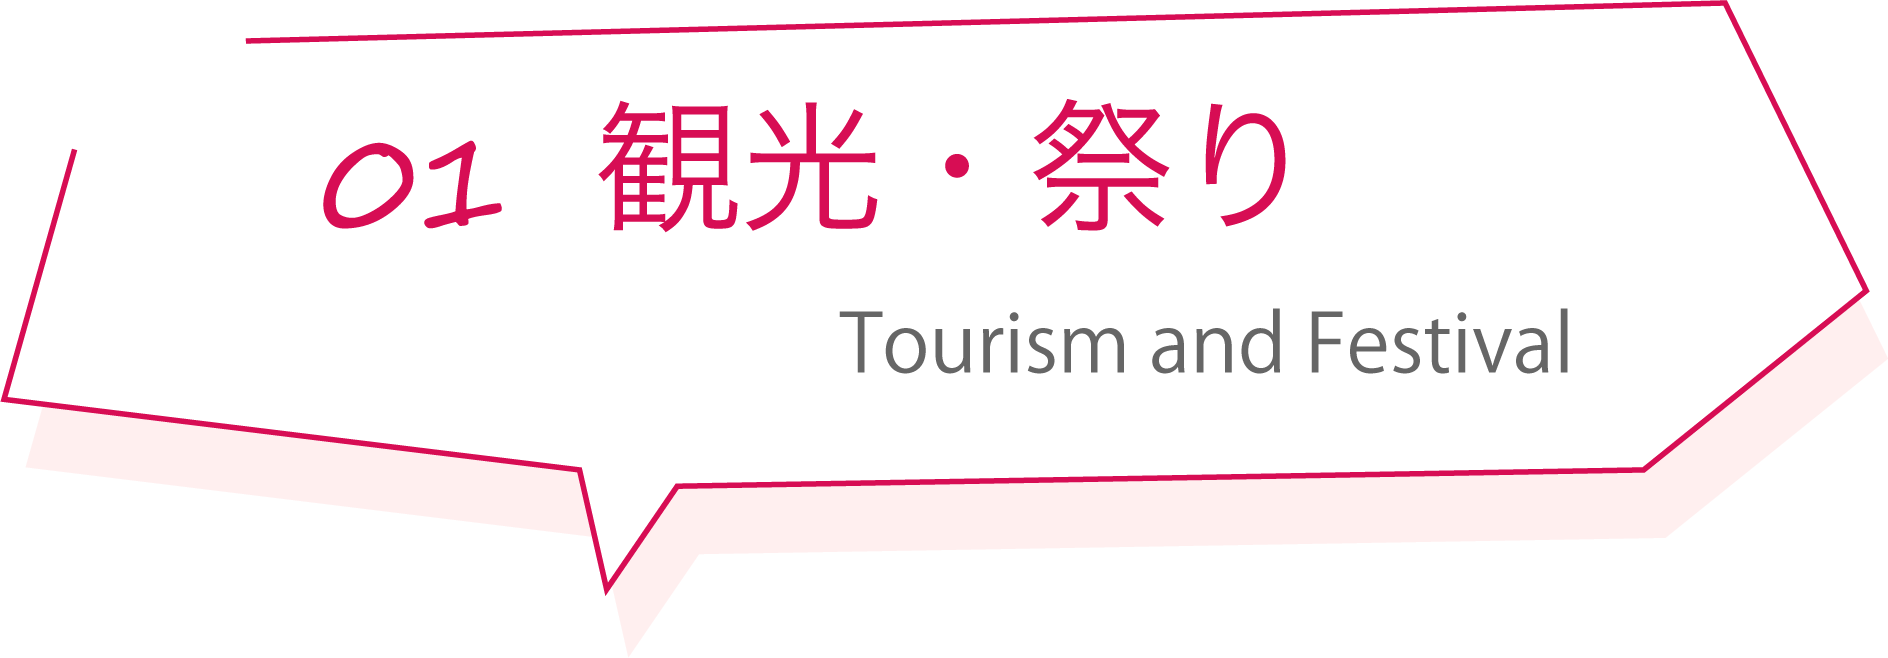 観光・祭り Tourism and Festival